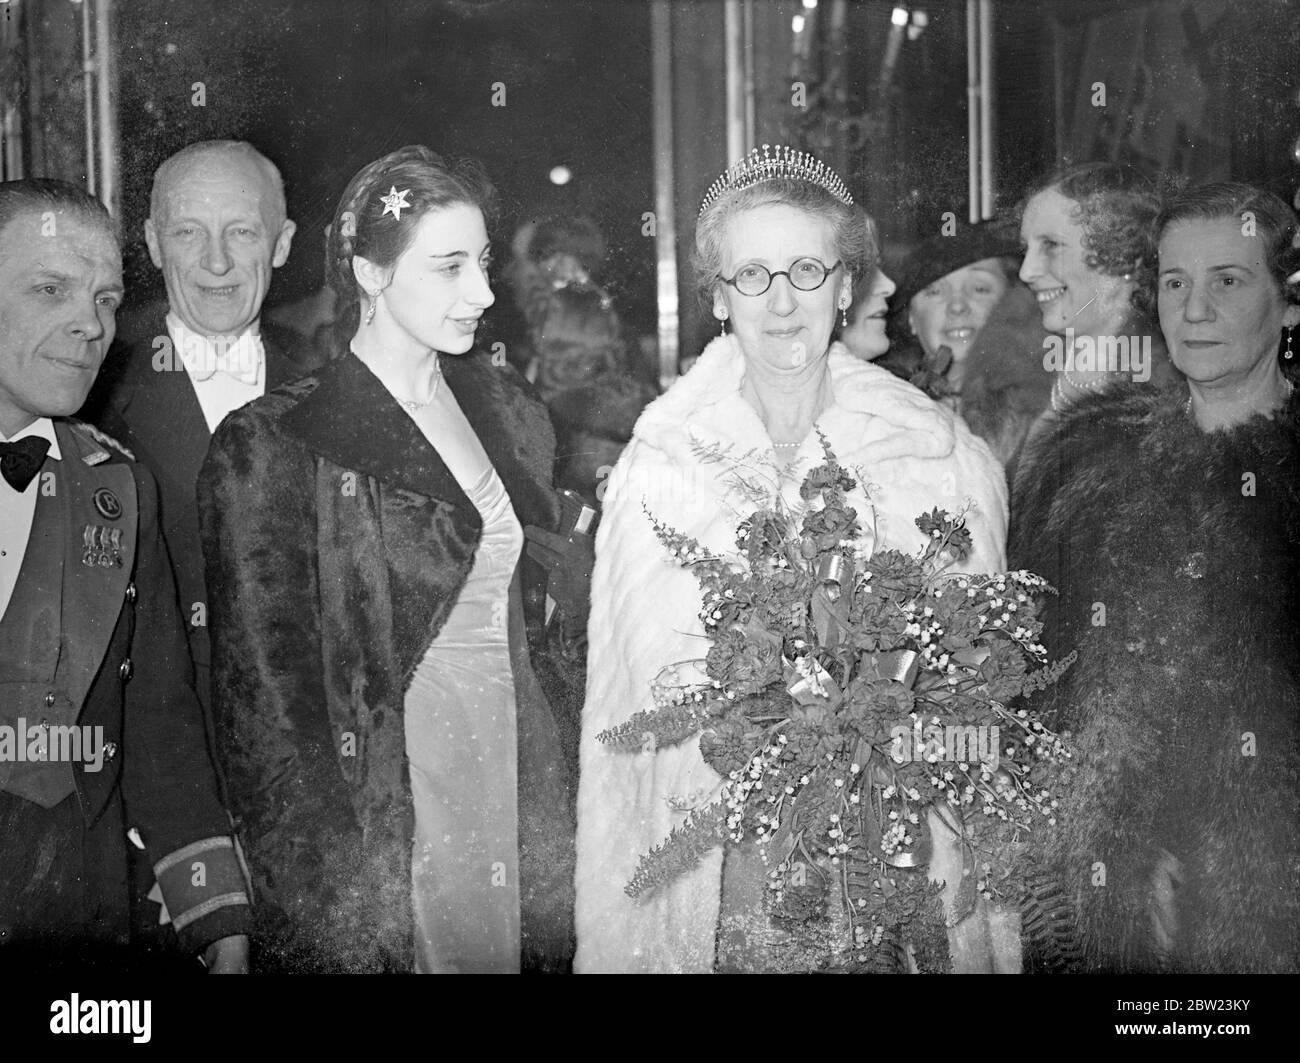 Lady Mayoress à la première du nouveau film de laughton. Le nouveau film de Charles Laughton, « Vessel of Wrath », a été présenté en première à la Regal, Marble Arch. Photos, la Lady Mayoress, Lady Twyford, et sa fille à la première. 24 février 1938 Banque D'Images